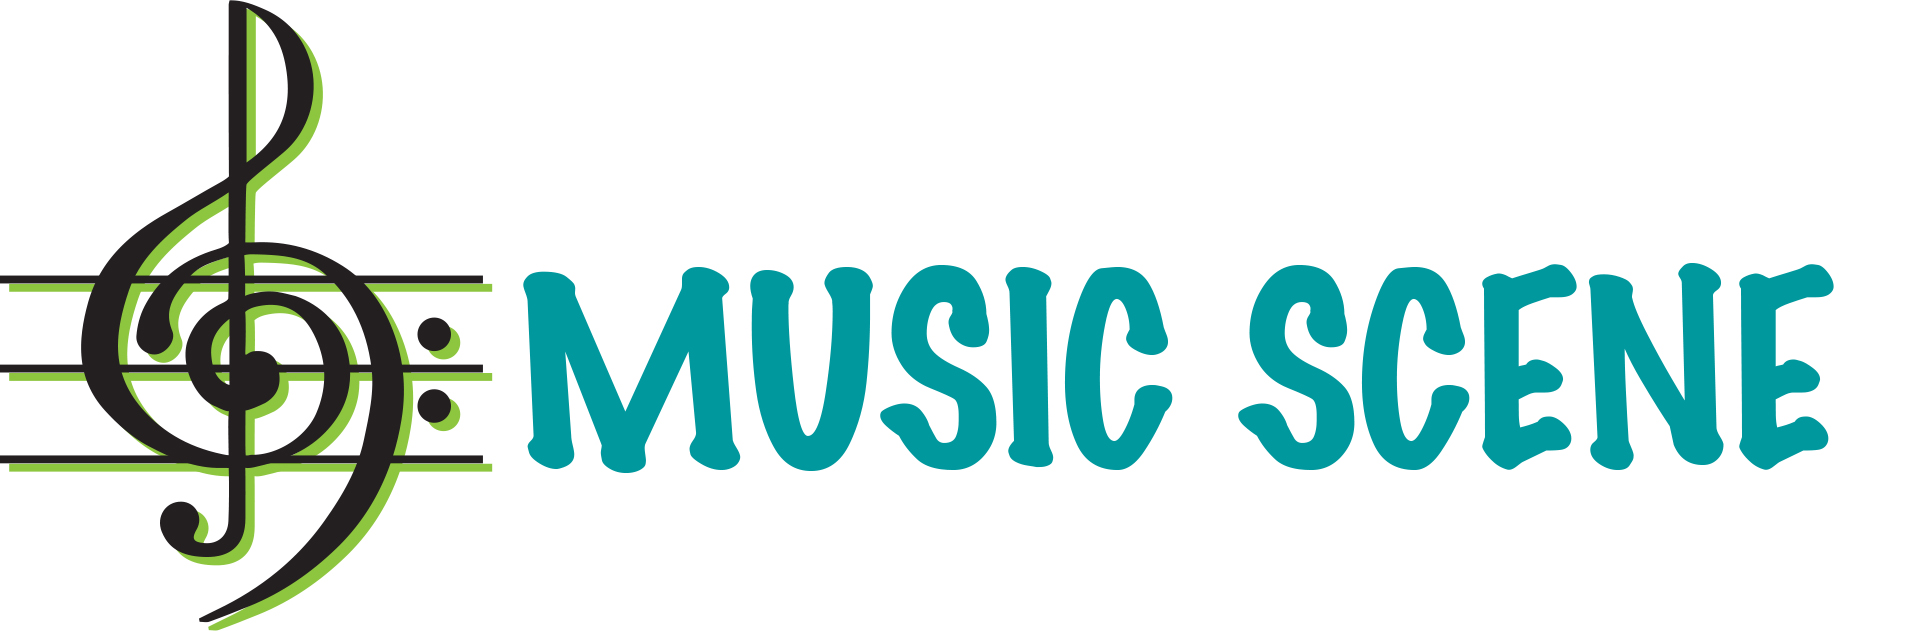 Music Scene LLC logo